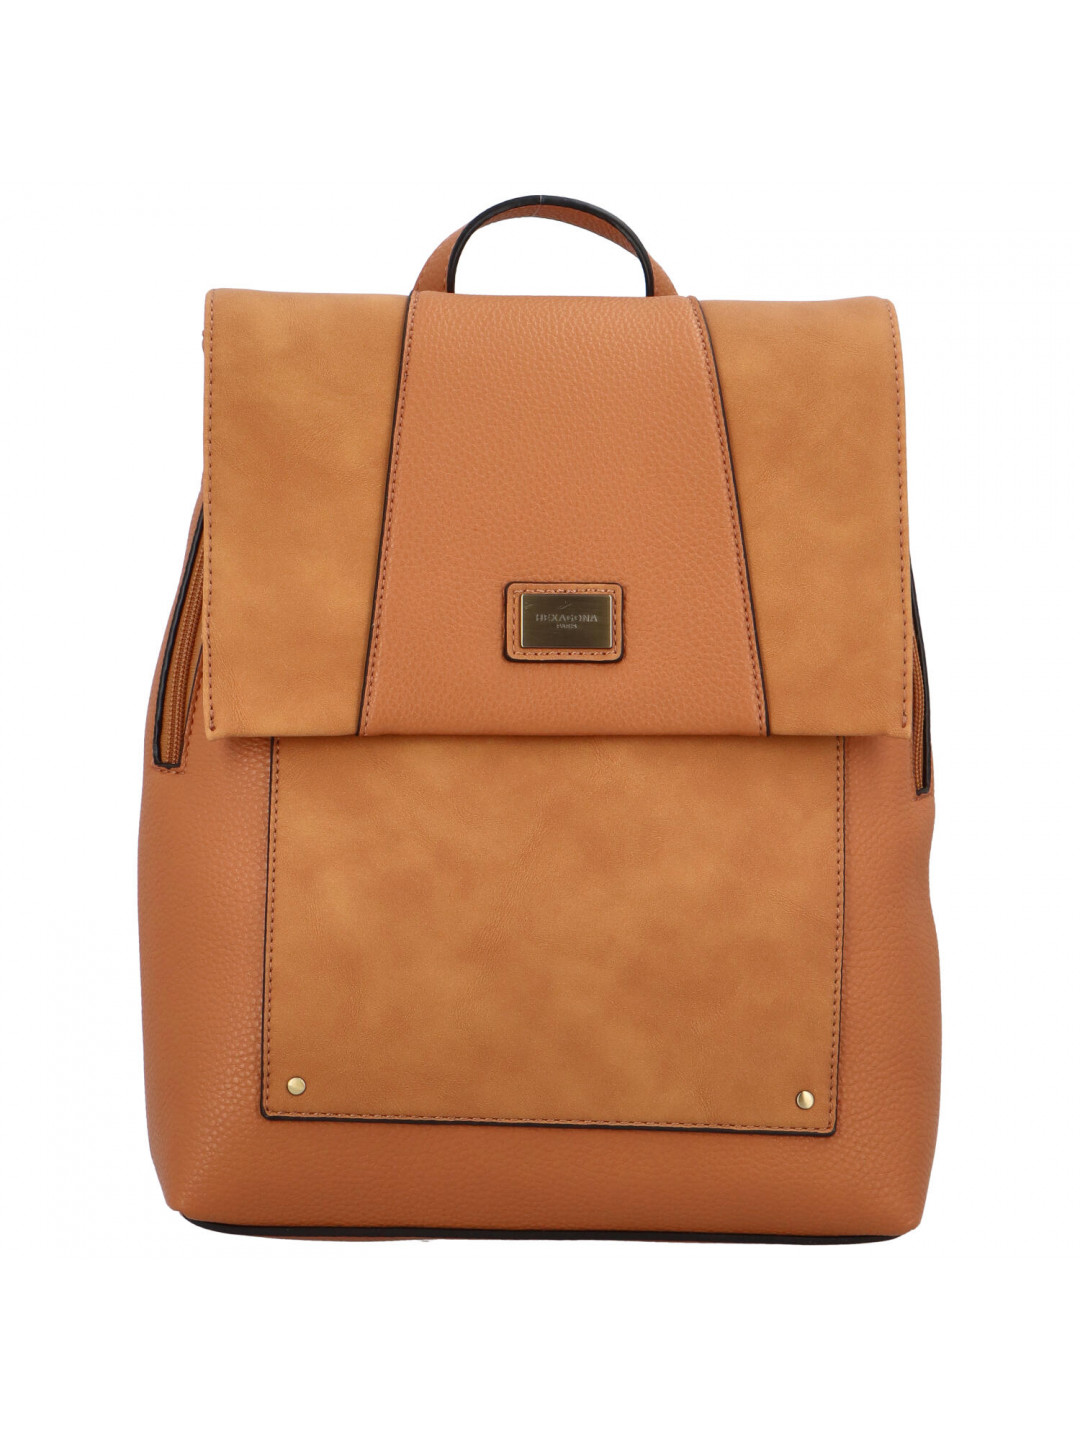 Luxusní dámský batoh světle hnědý – Hexagona Ashim